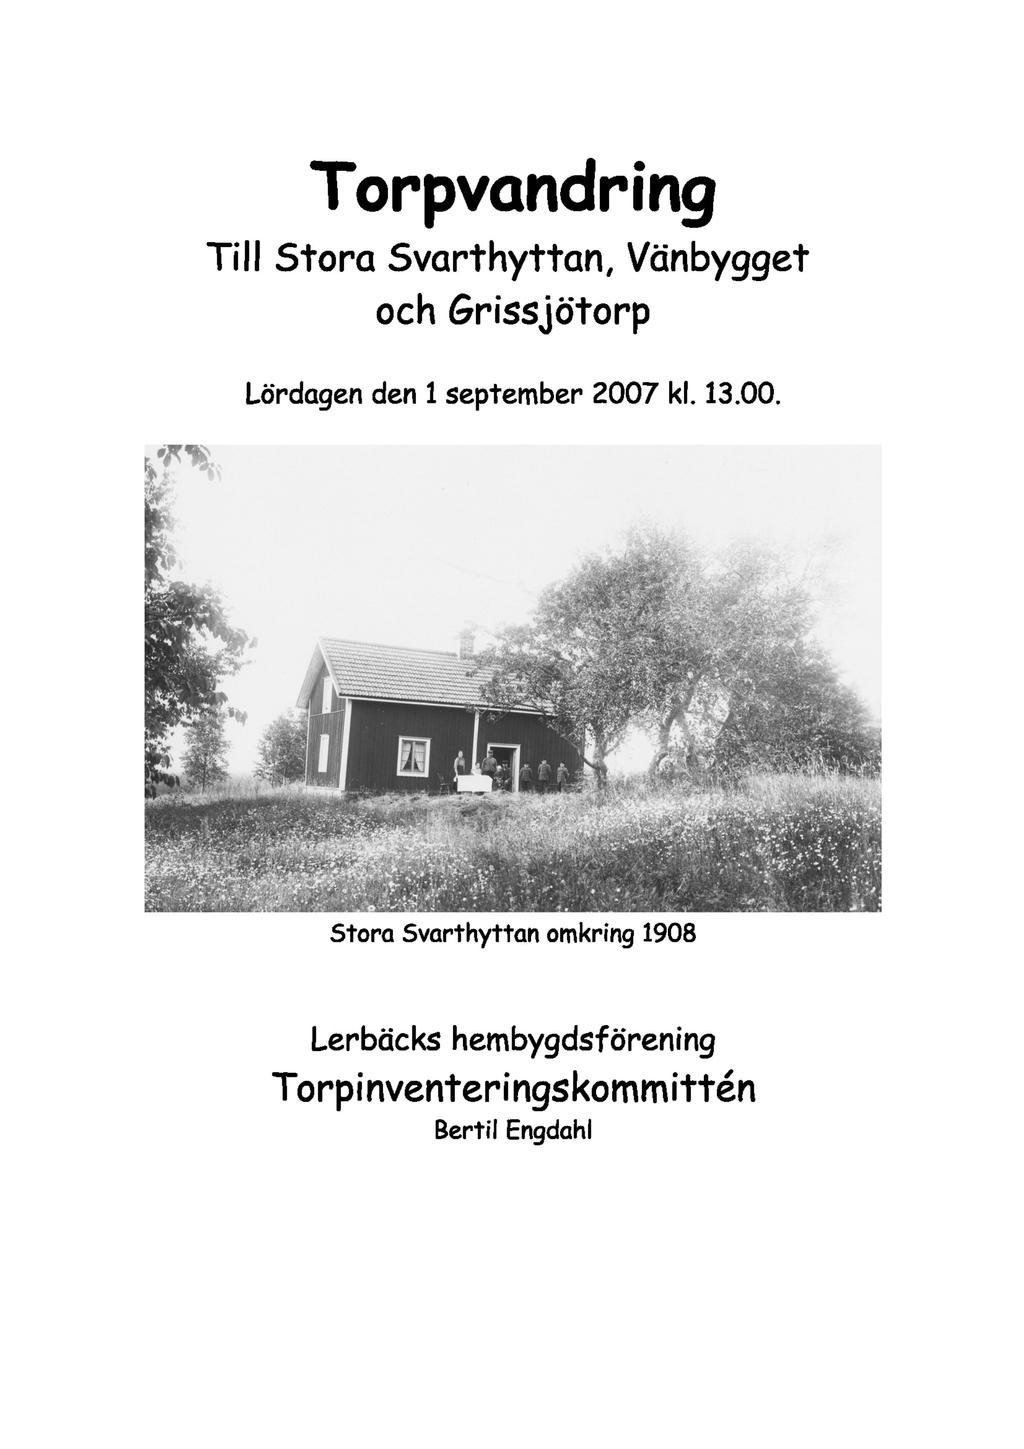 Torpvandring Till Stora Svarthyttan, Vänbygget och Grissjötorp Lördagen den 1 september 2007 kl. 13.